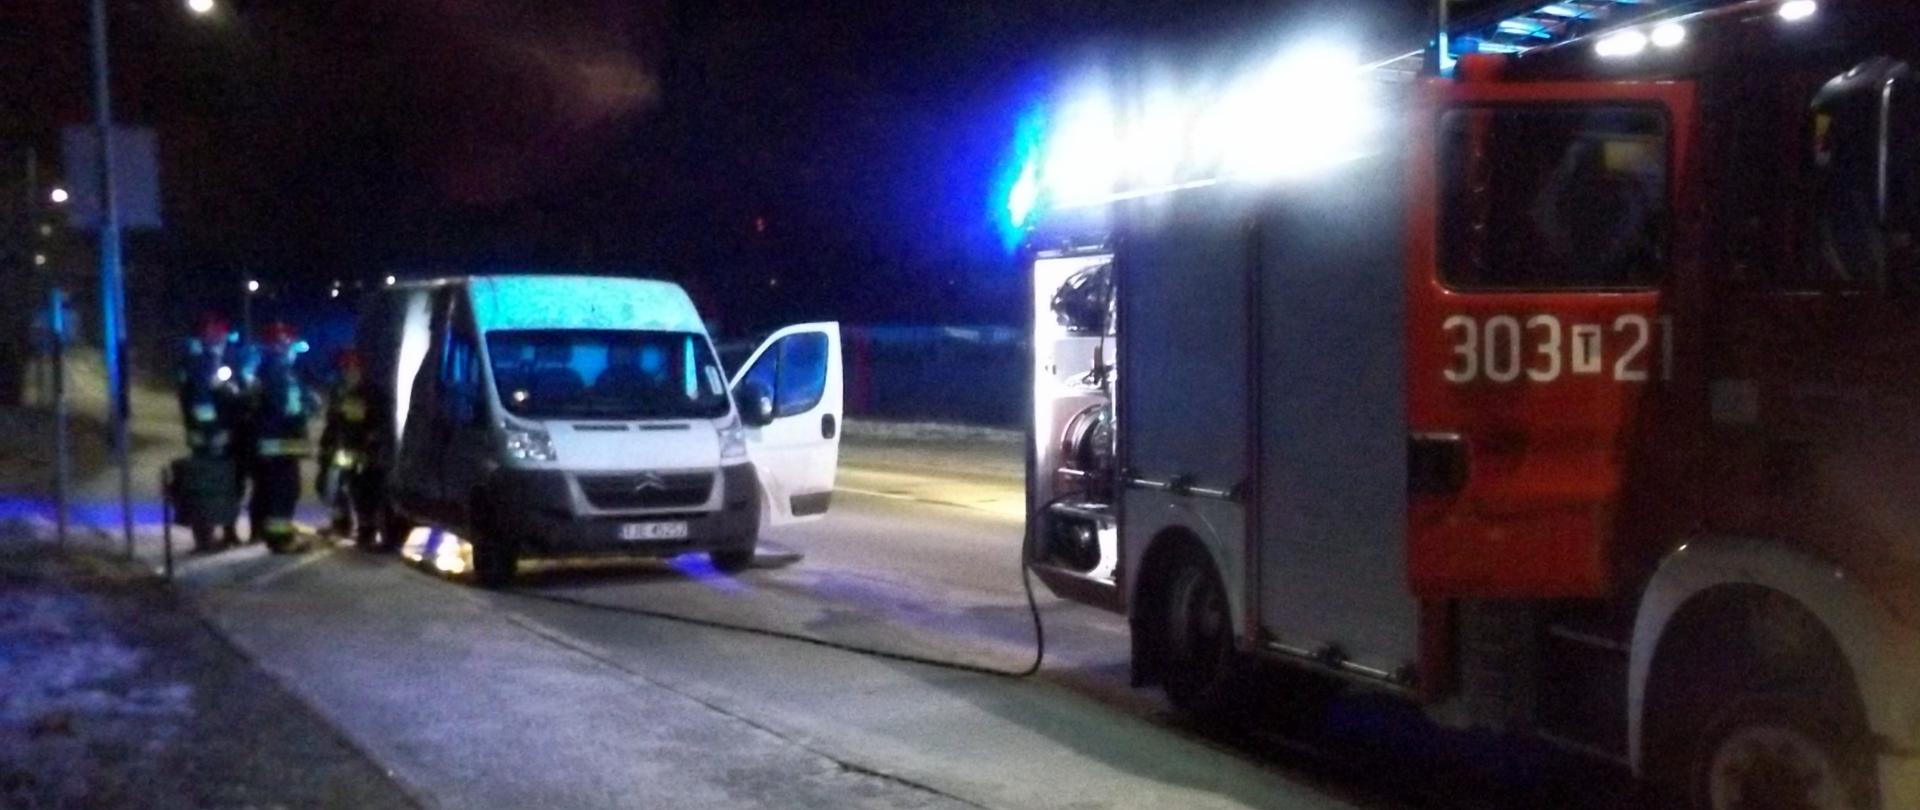 Na zdjęciu znajduje się samochód gaśniczy na sygnałach. Jest ciemno. Za samochodem gaśniczym stoi bus przewożący pieczywo. Przed nim strażacy sprawdzający miejsce pożaru.